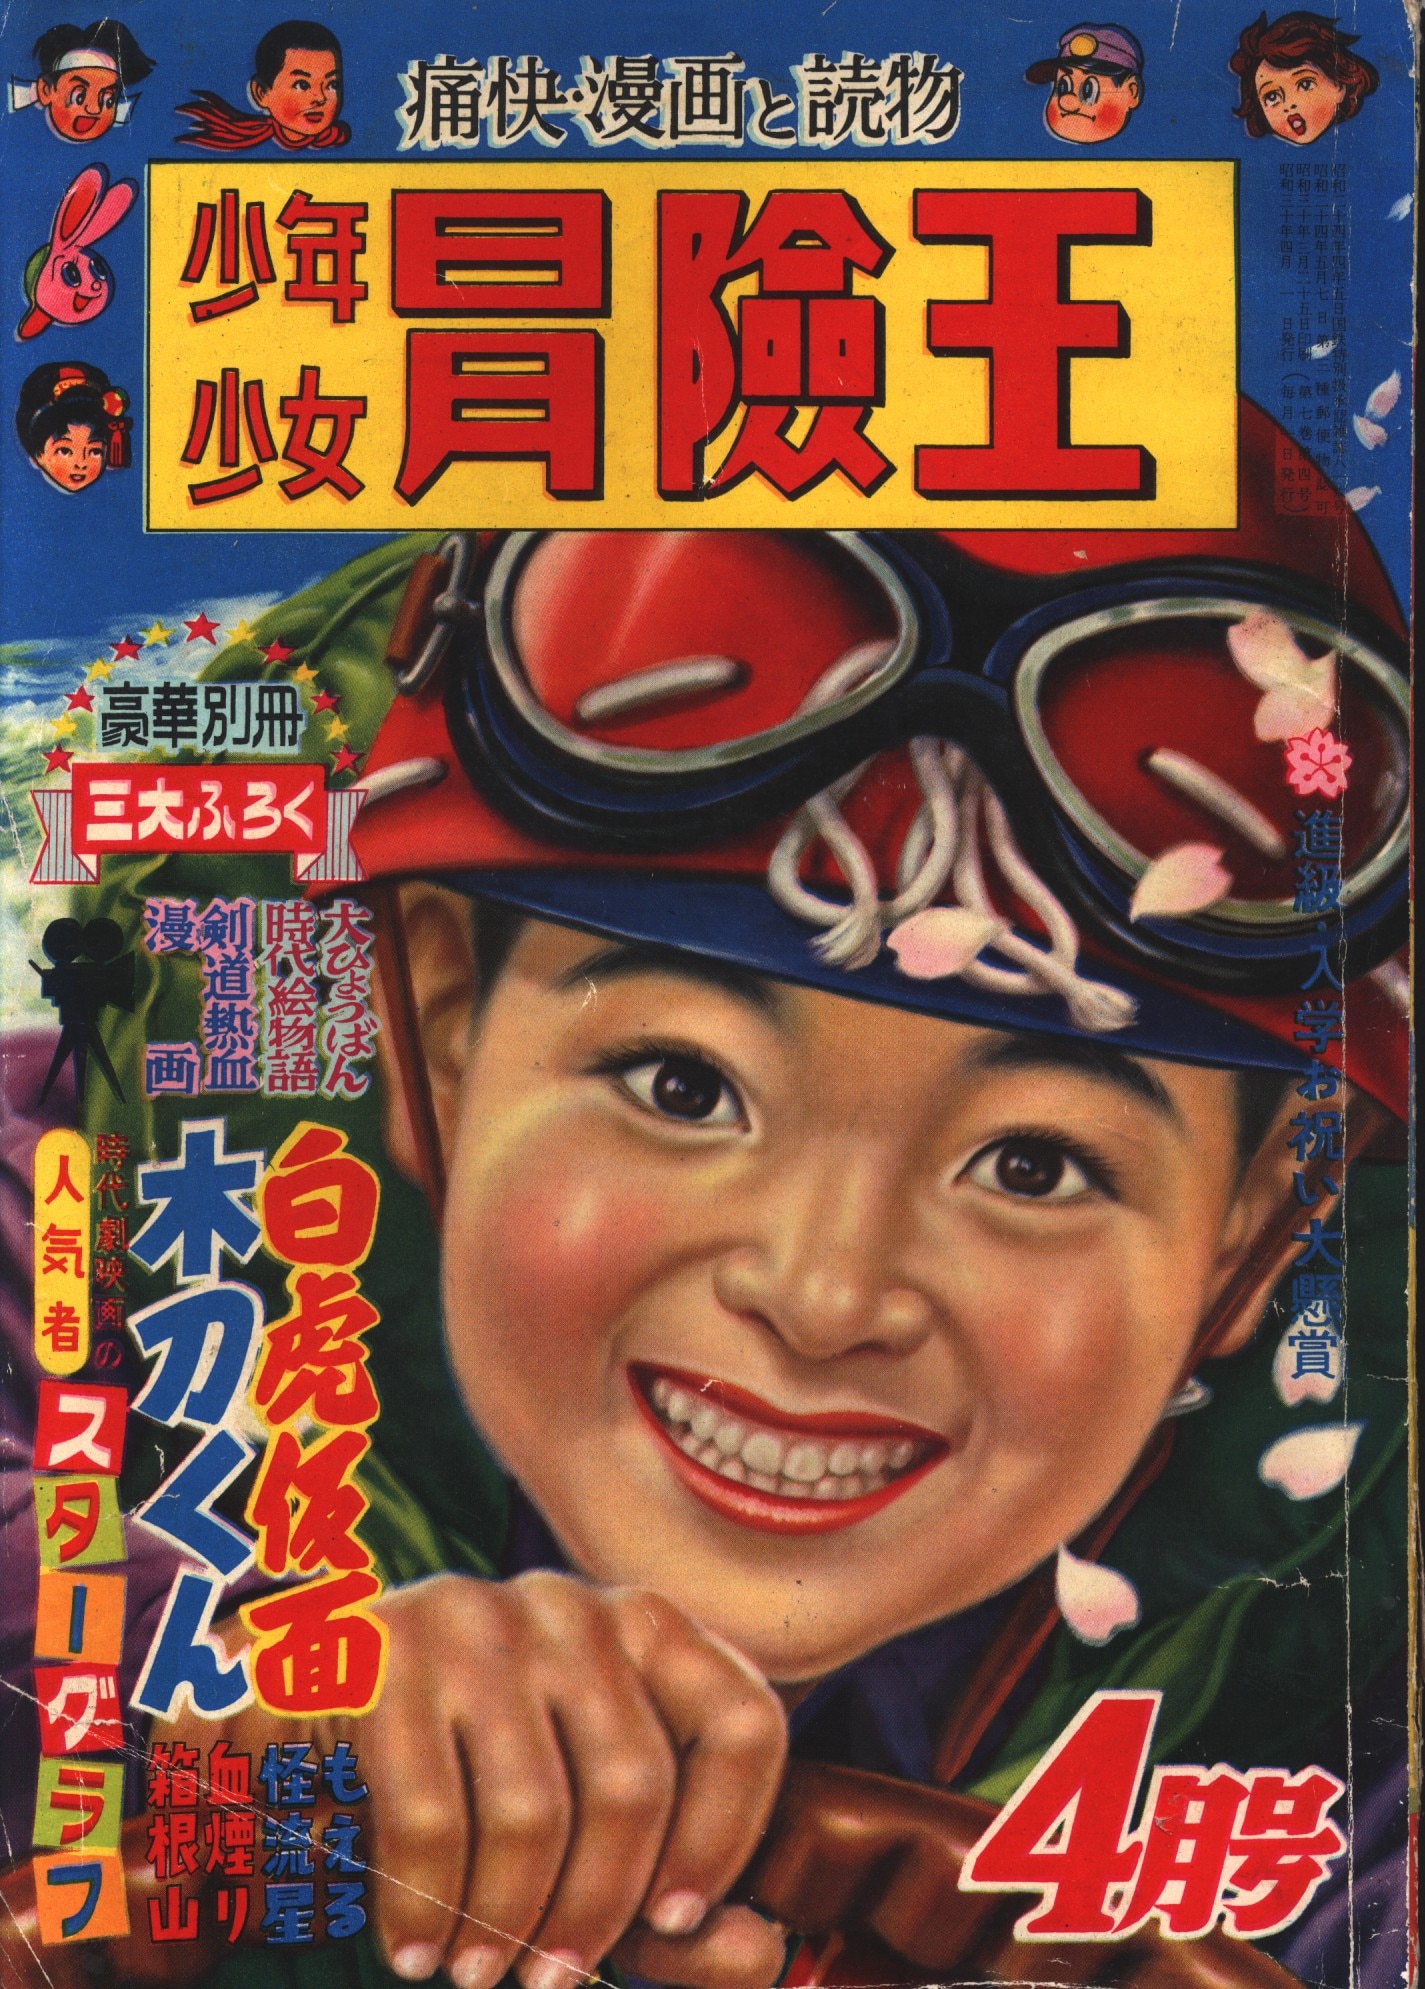 状態に気になる方はご遠慮下さい昭和30年代の少年漫画雑誌5冊セット